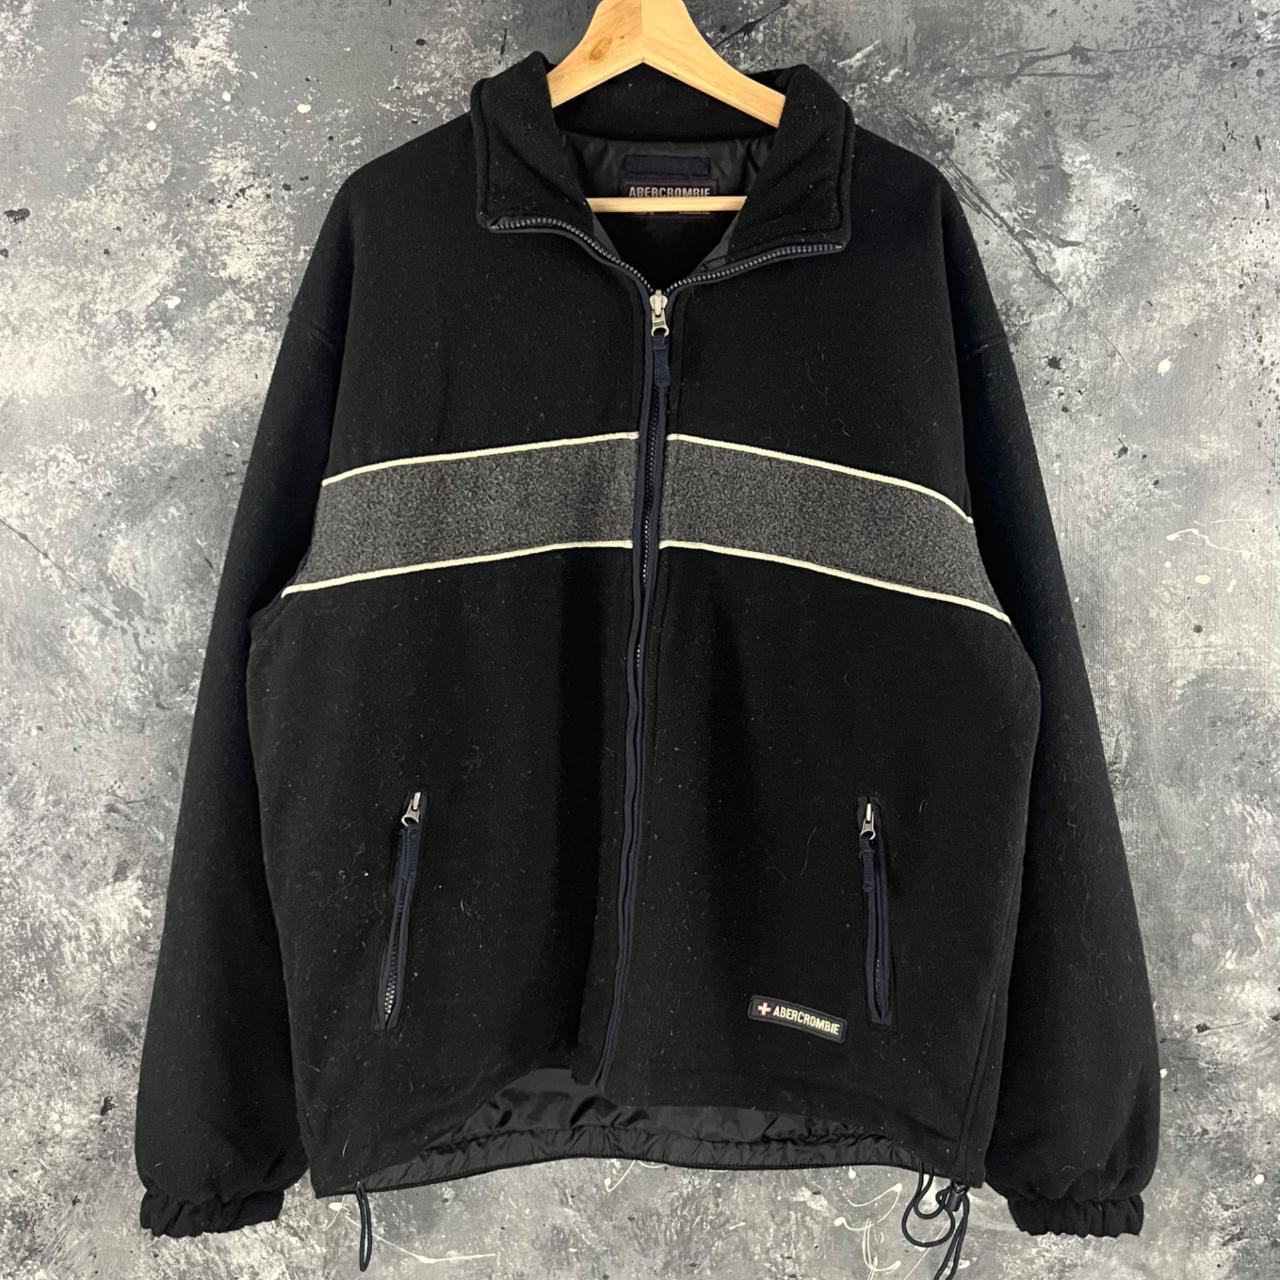 Vintage 80’s Abercrombie reversible jacket Great... - Depop